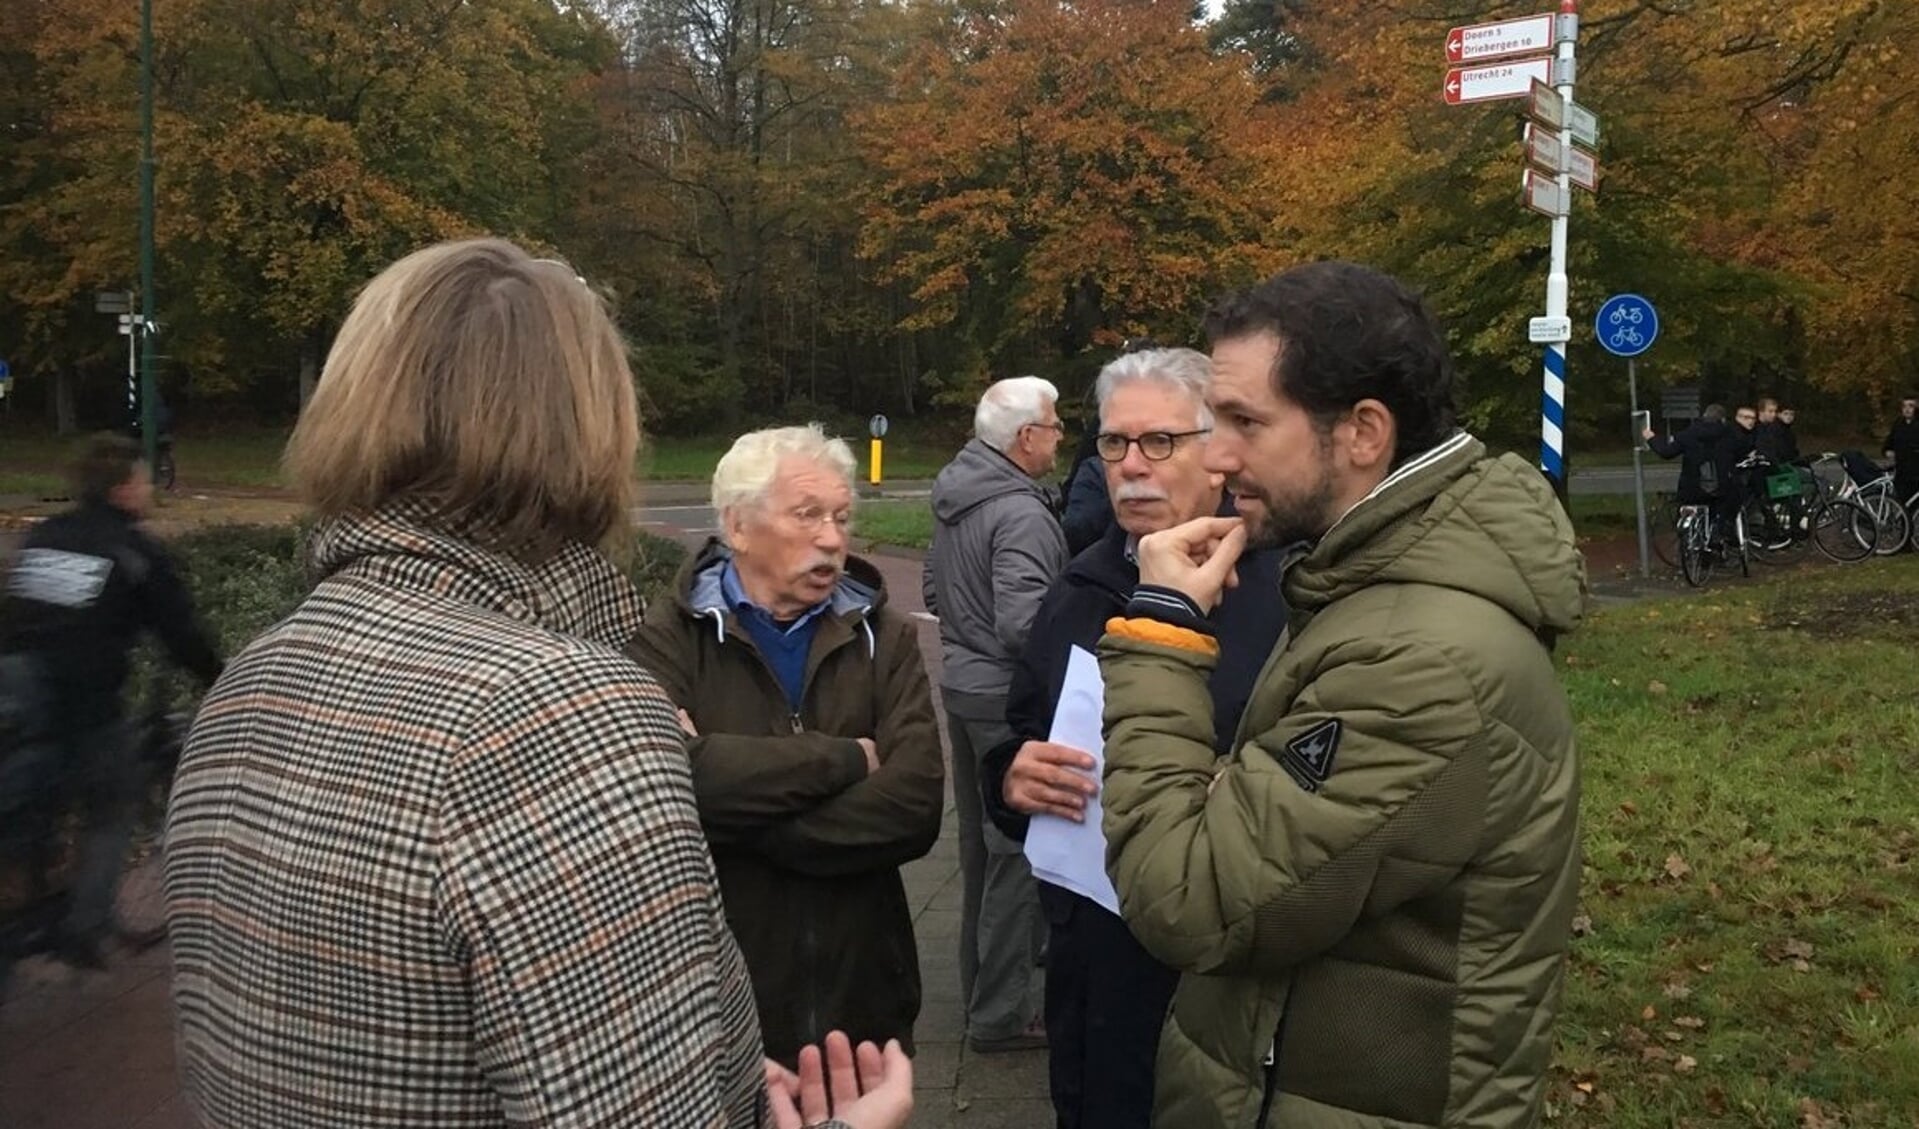 Karin Oyevaar (gemeenteraad), Stef Le Large de Vilvent (omwonende) en Teun Monster (werkgroep) in gesprek met gedeputeerde Arne Schaddelee (rechts).